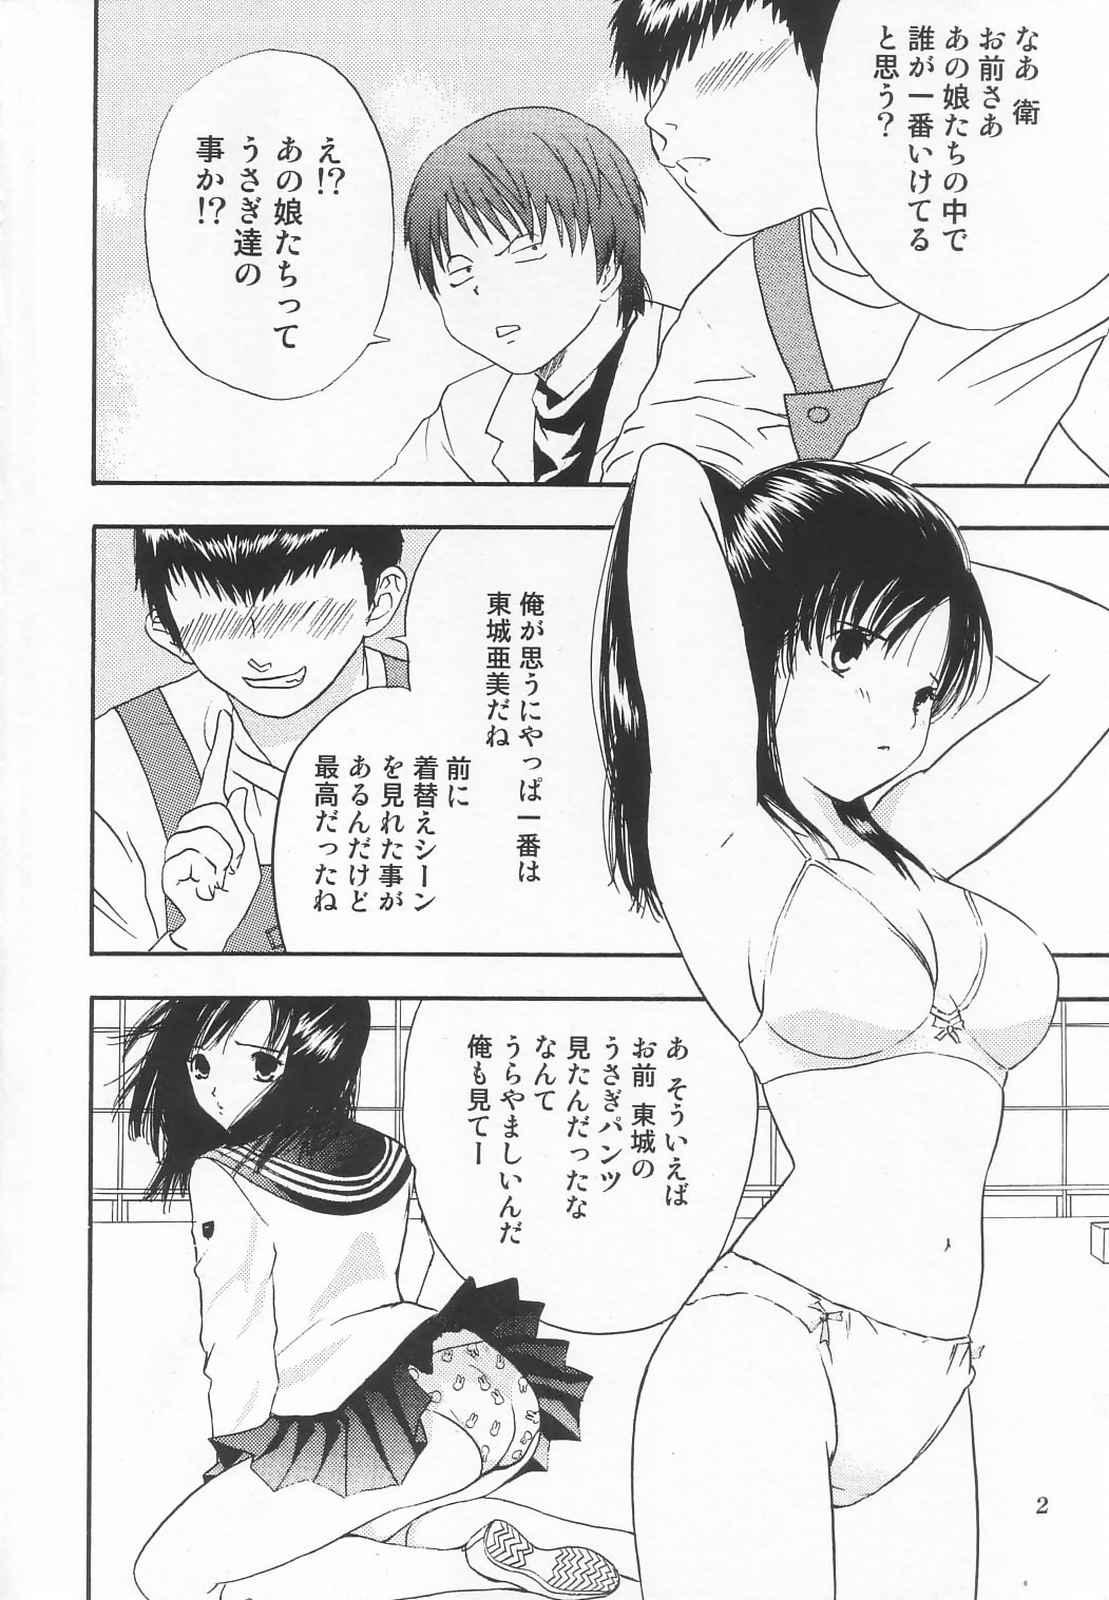 Gay 3some Tokusatsu Magazine x 2003 Fuyu Gou - Sailor moon Ichigo 100 Flash - Page 4